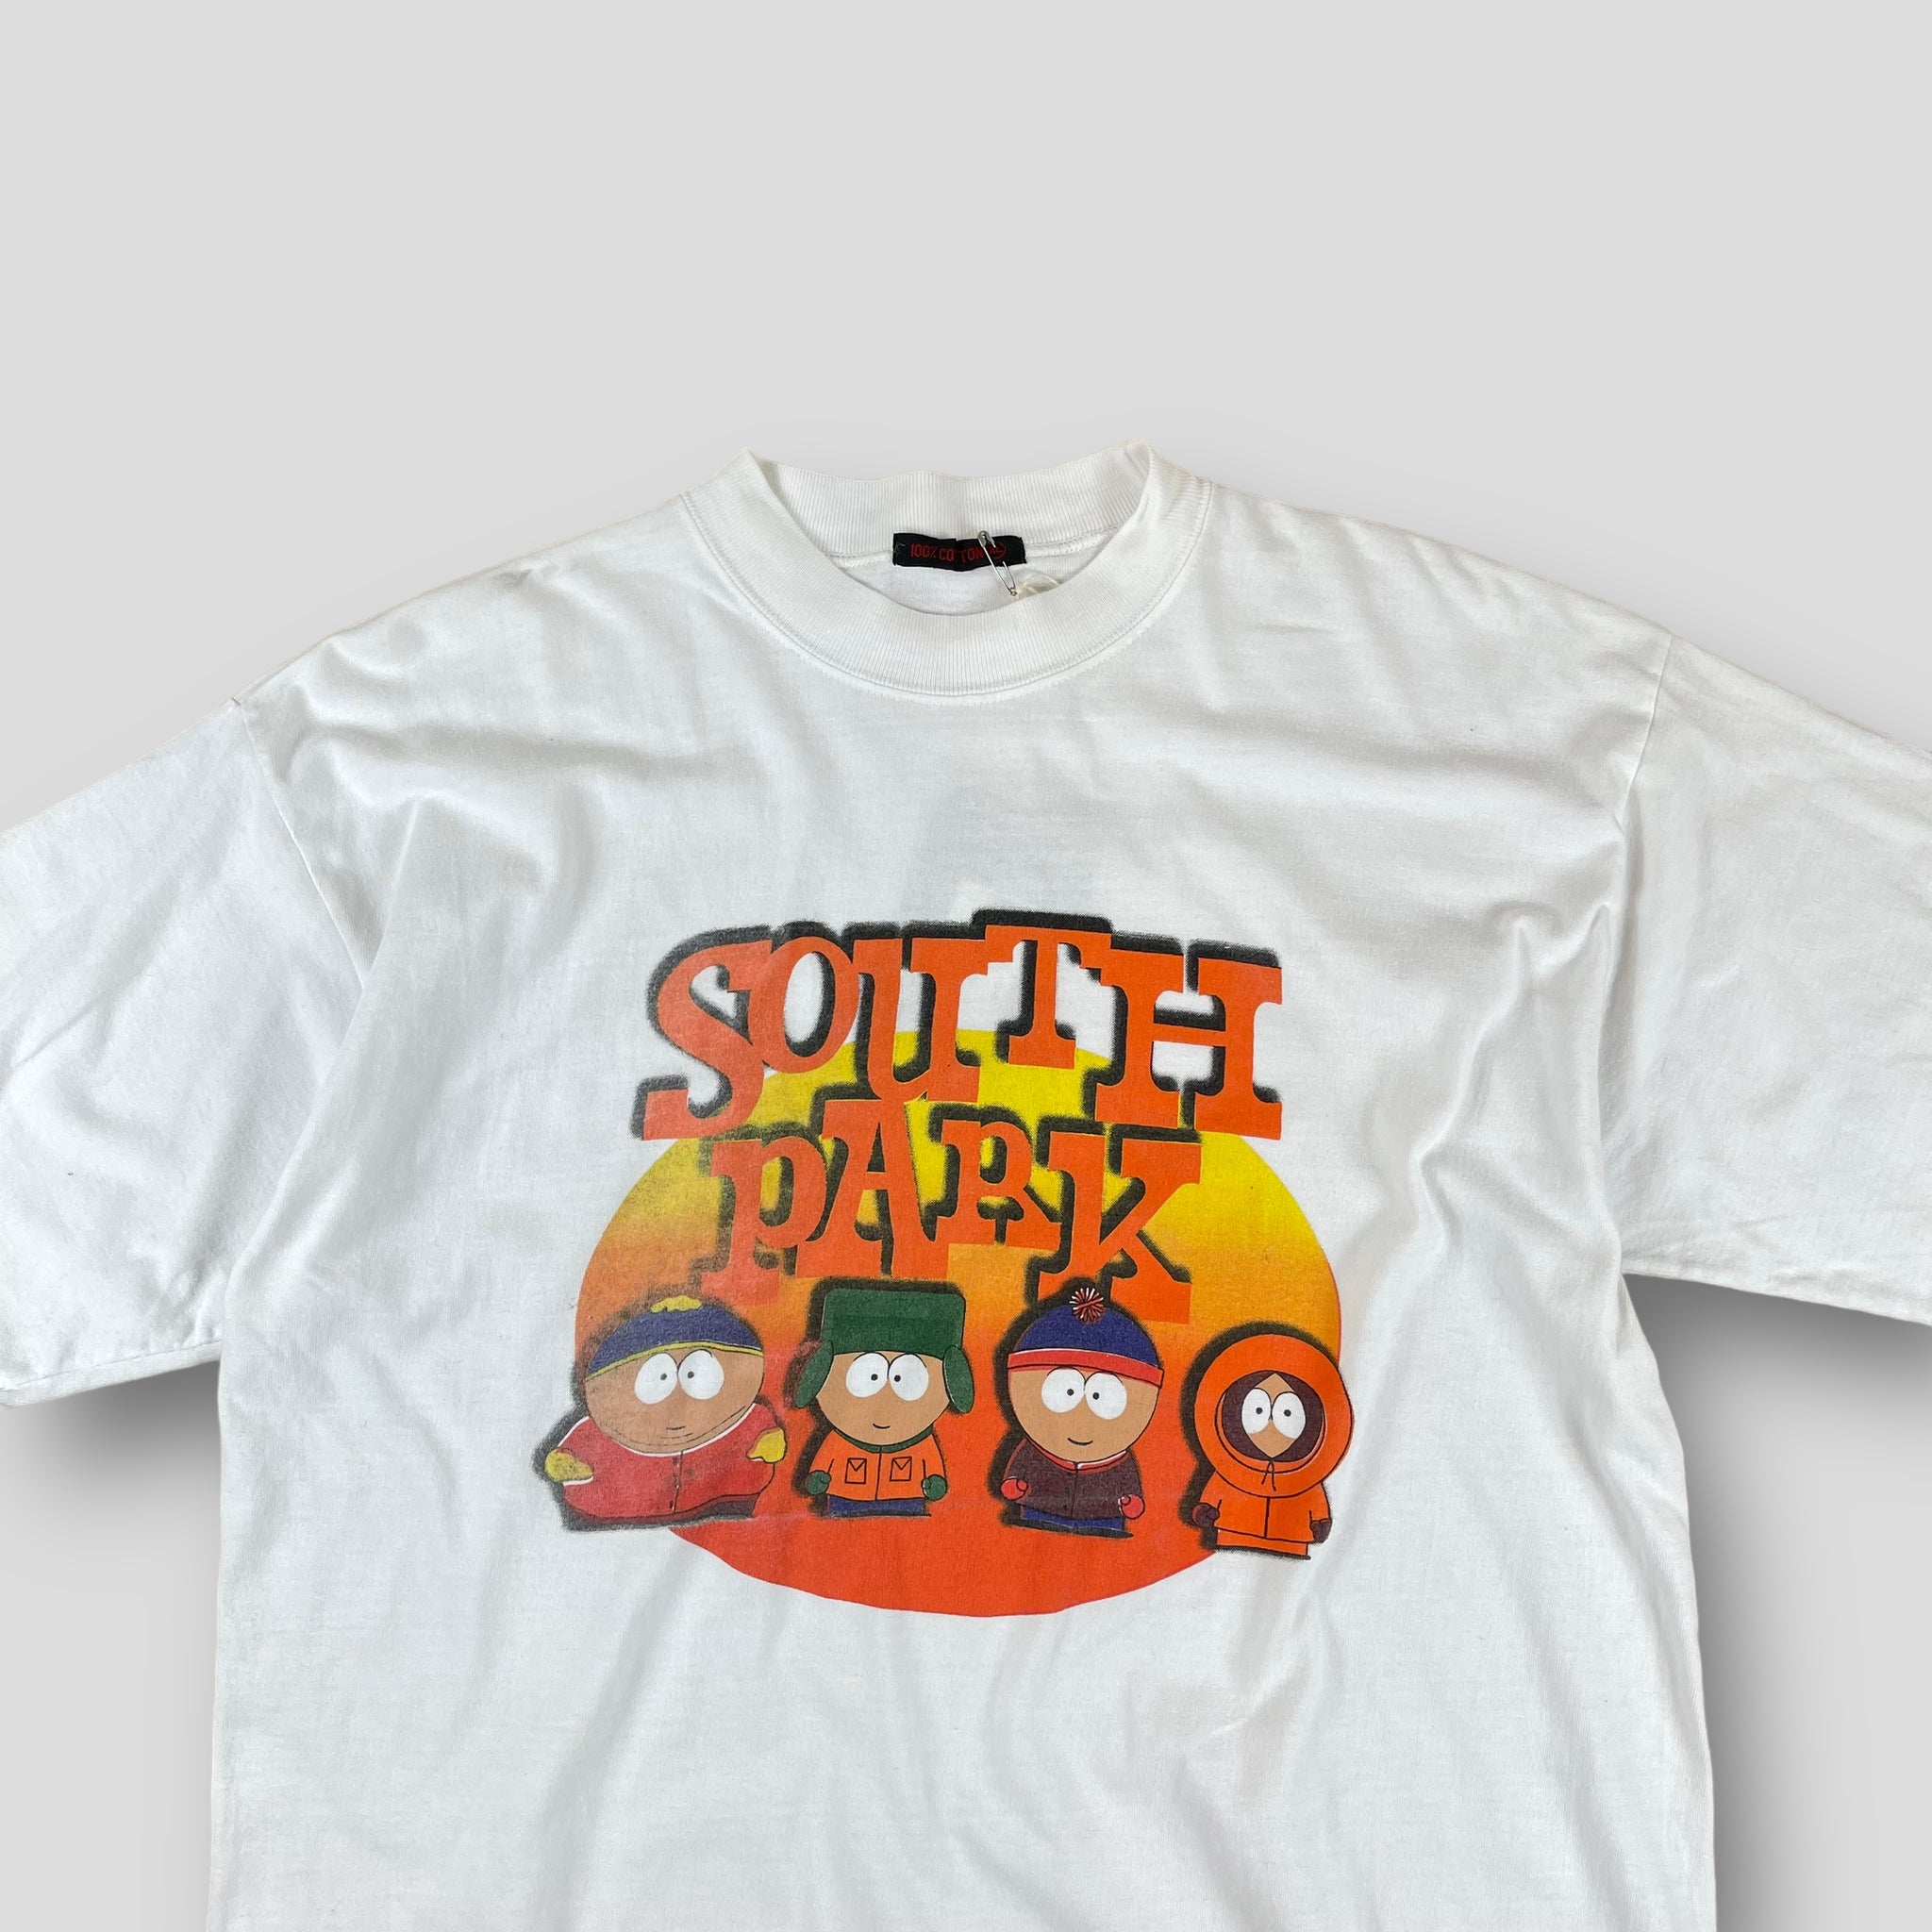 Vintage South Park Graphic T-Shirt